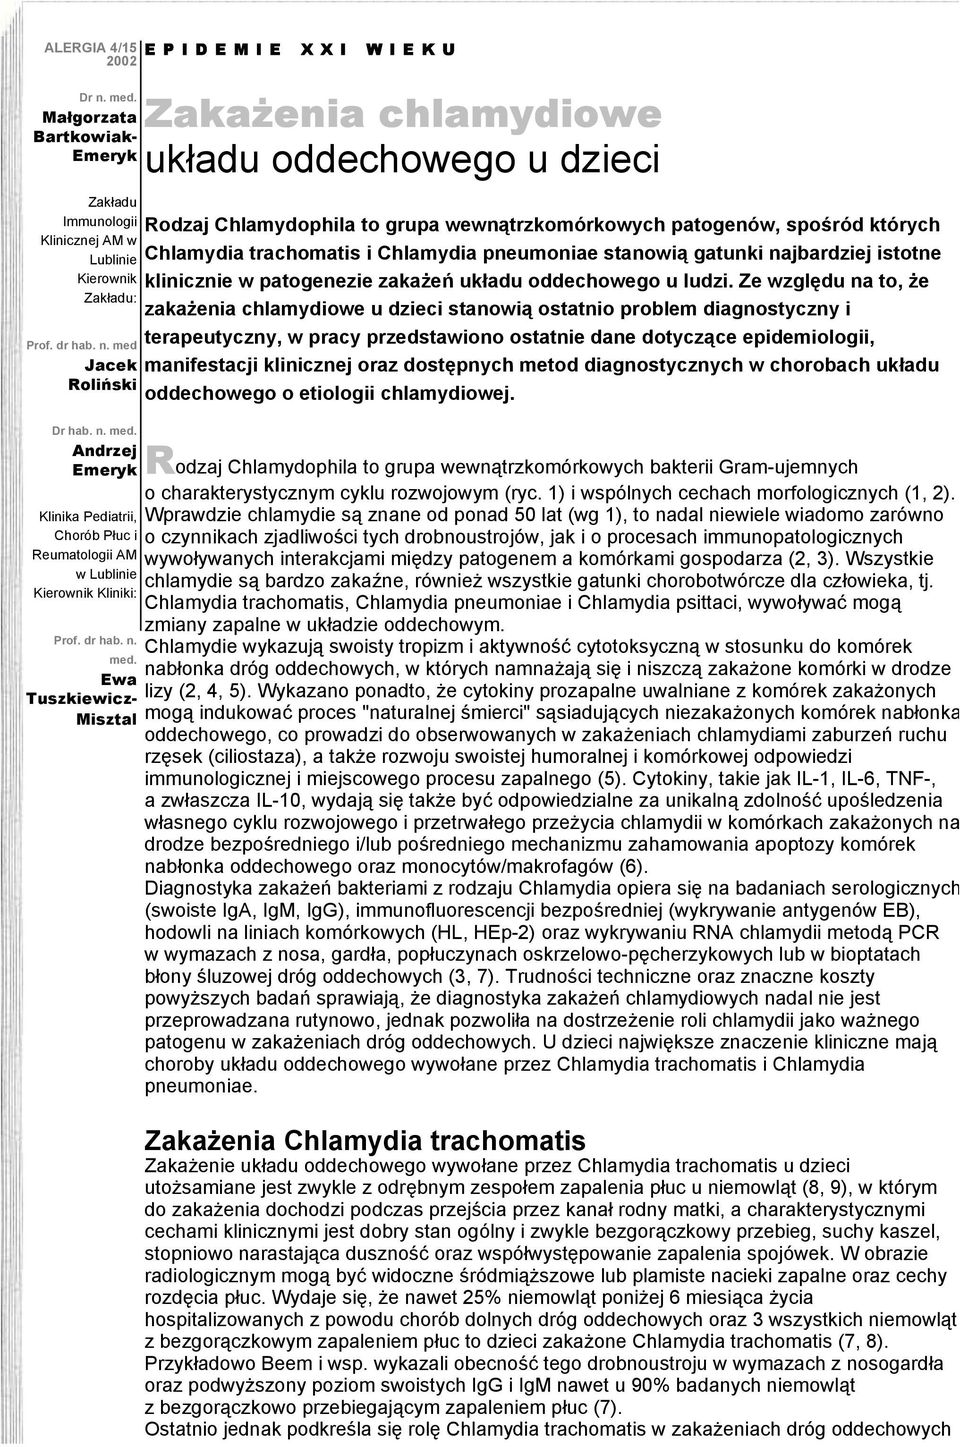 Ewa Tuszkiewicz- Misztal Zakażenia chlamydiowe układu oddechowego u dzieci Rodzaj Chlamydophila to grupa wewnątrzkomórkowych patogenów, spośród których Chlamydia trachomatis i Chlamydia pneumoniae